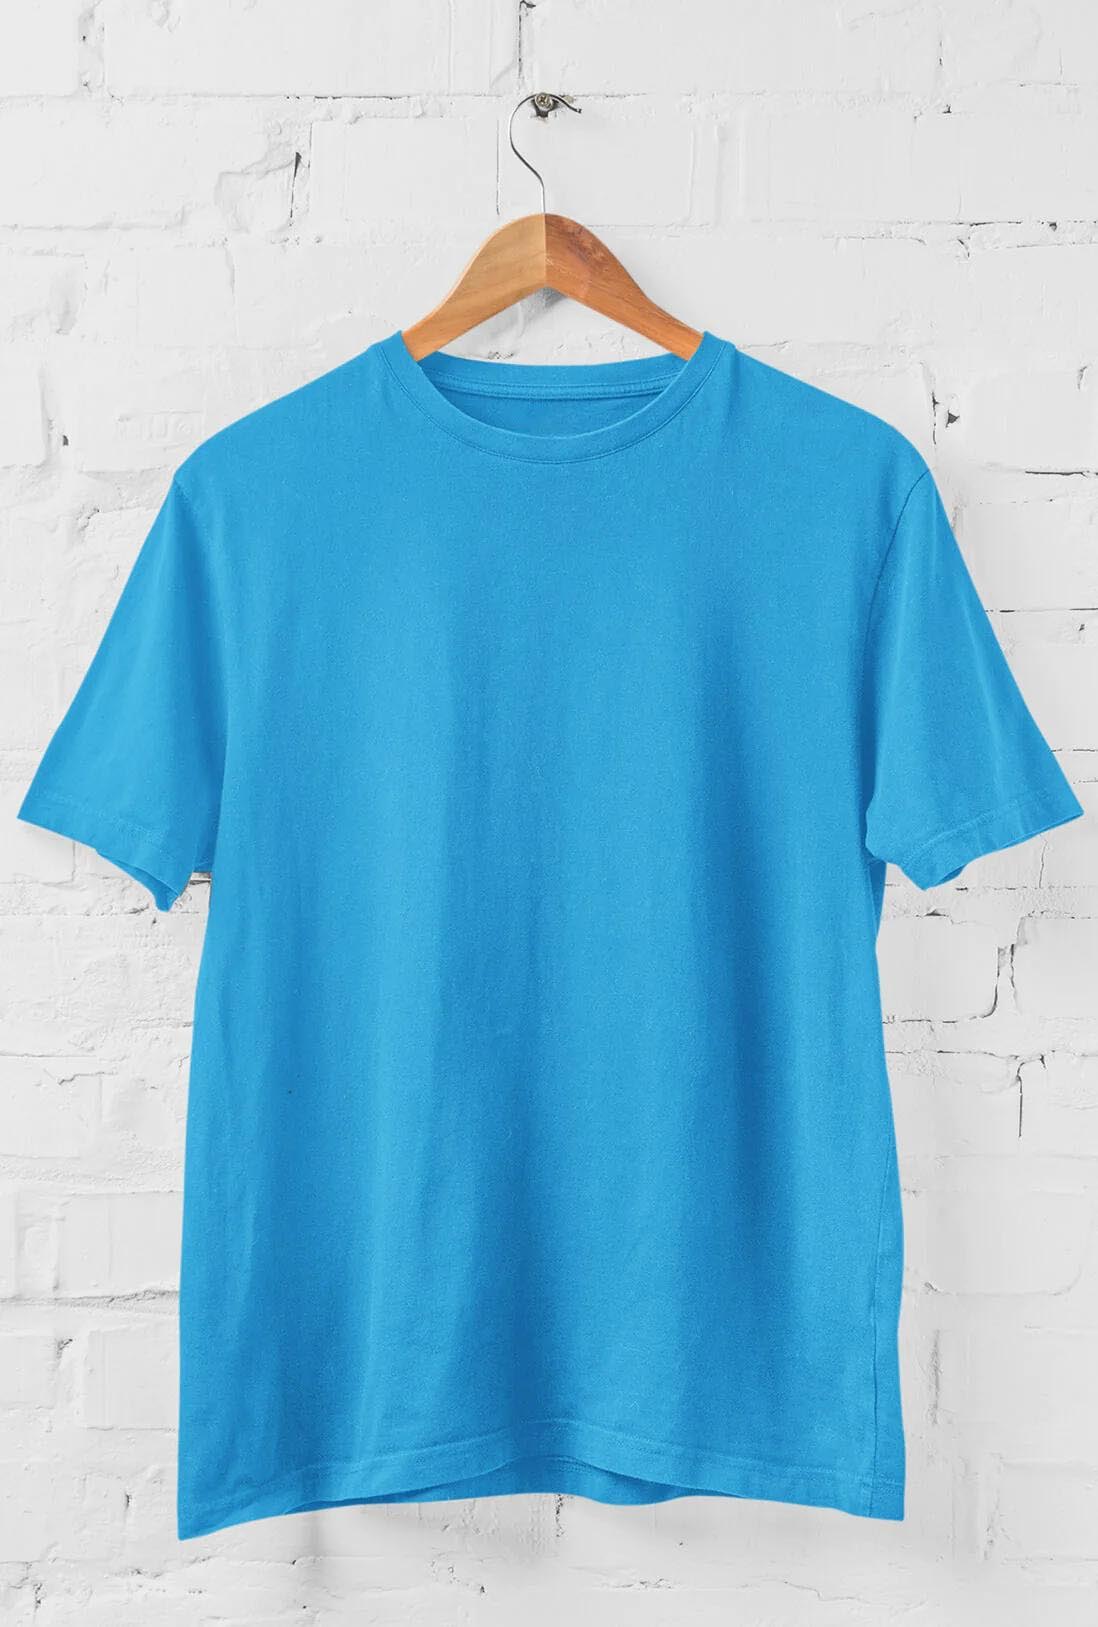 Men's Electric Blue Cotton T-Shirt